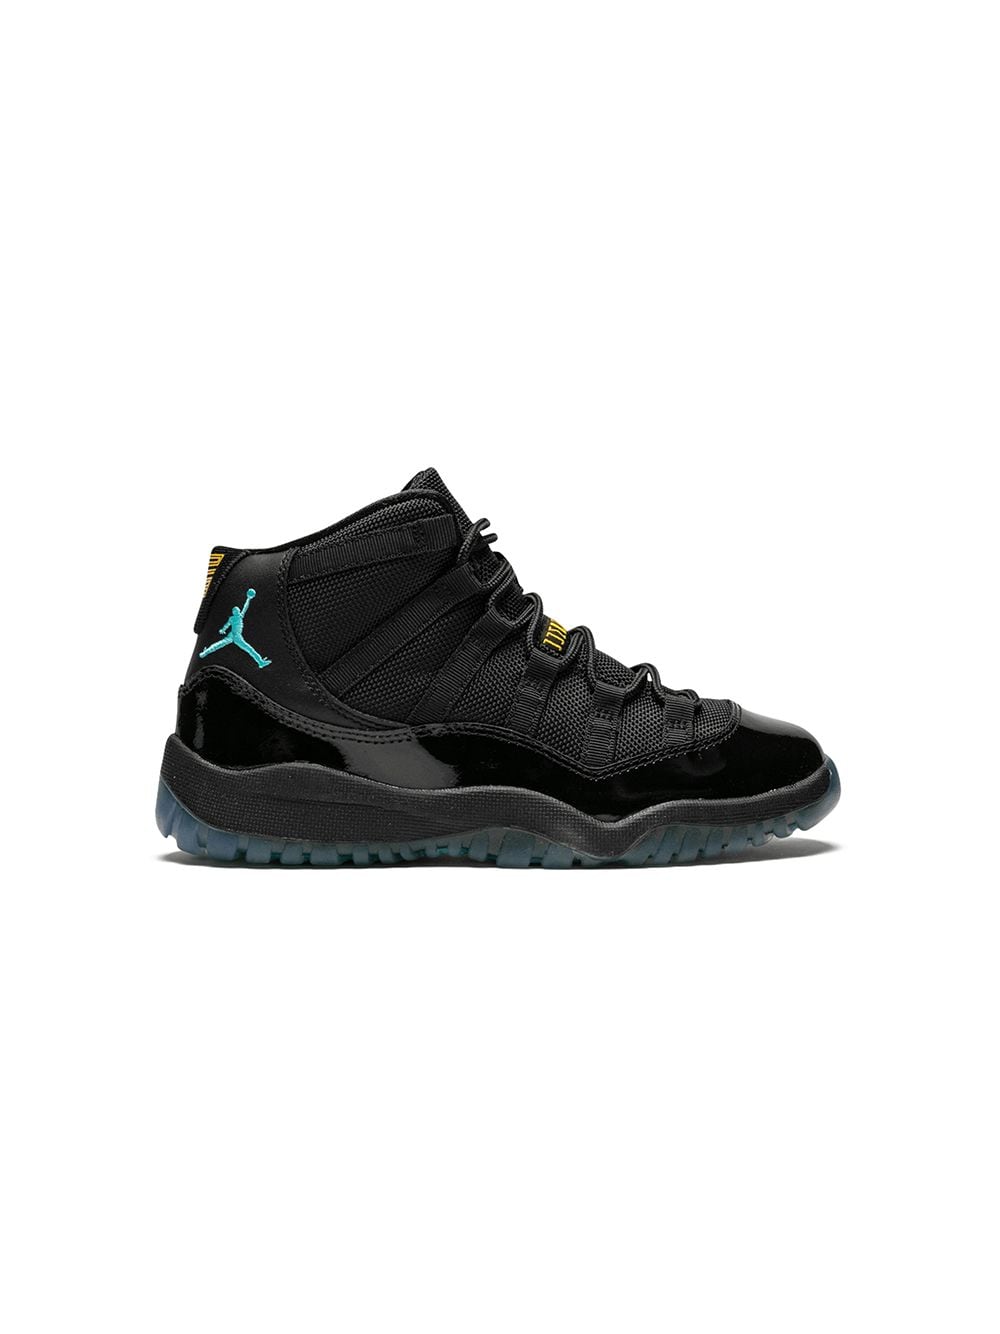 Image 1 of Jordan Kids Jordan 11 Retro "Gamma" sneakers